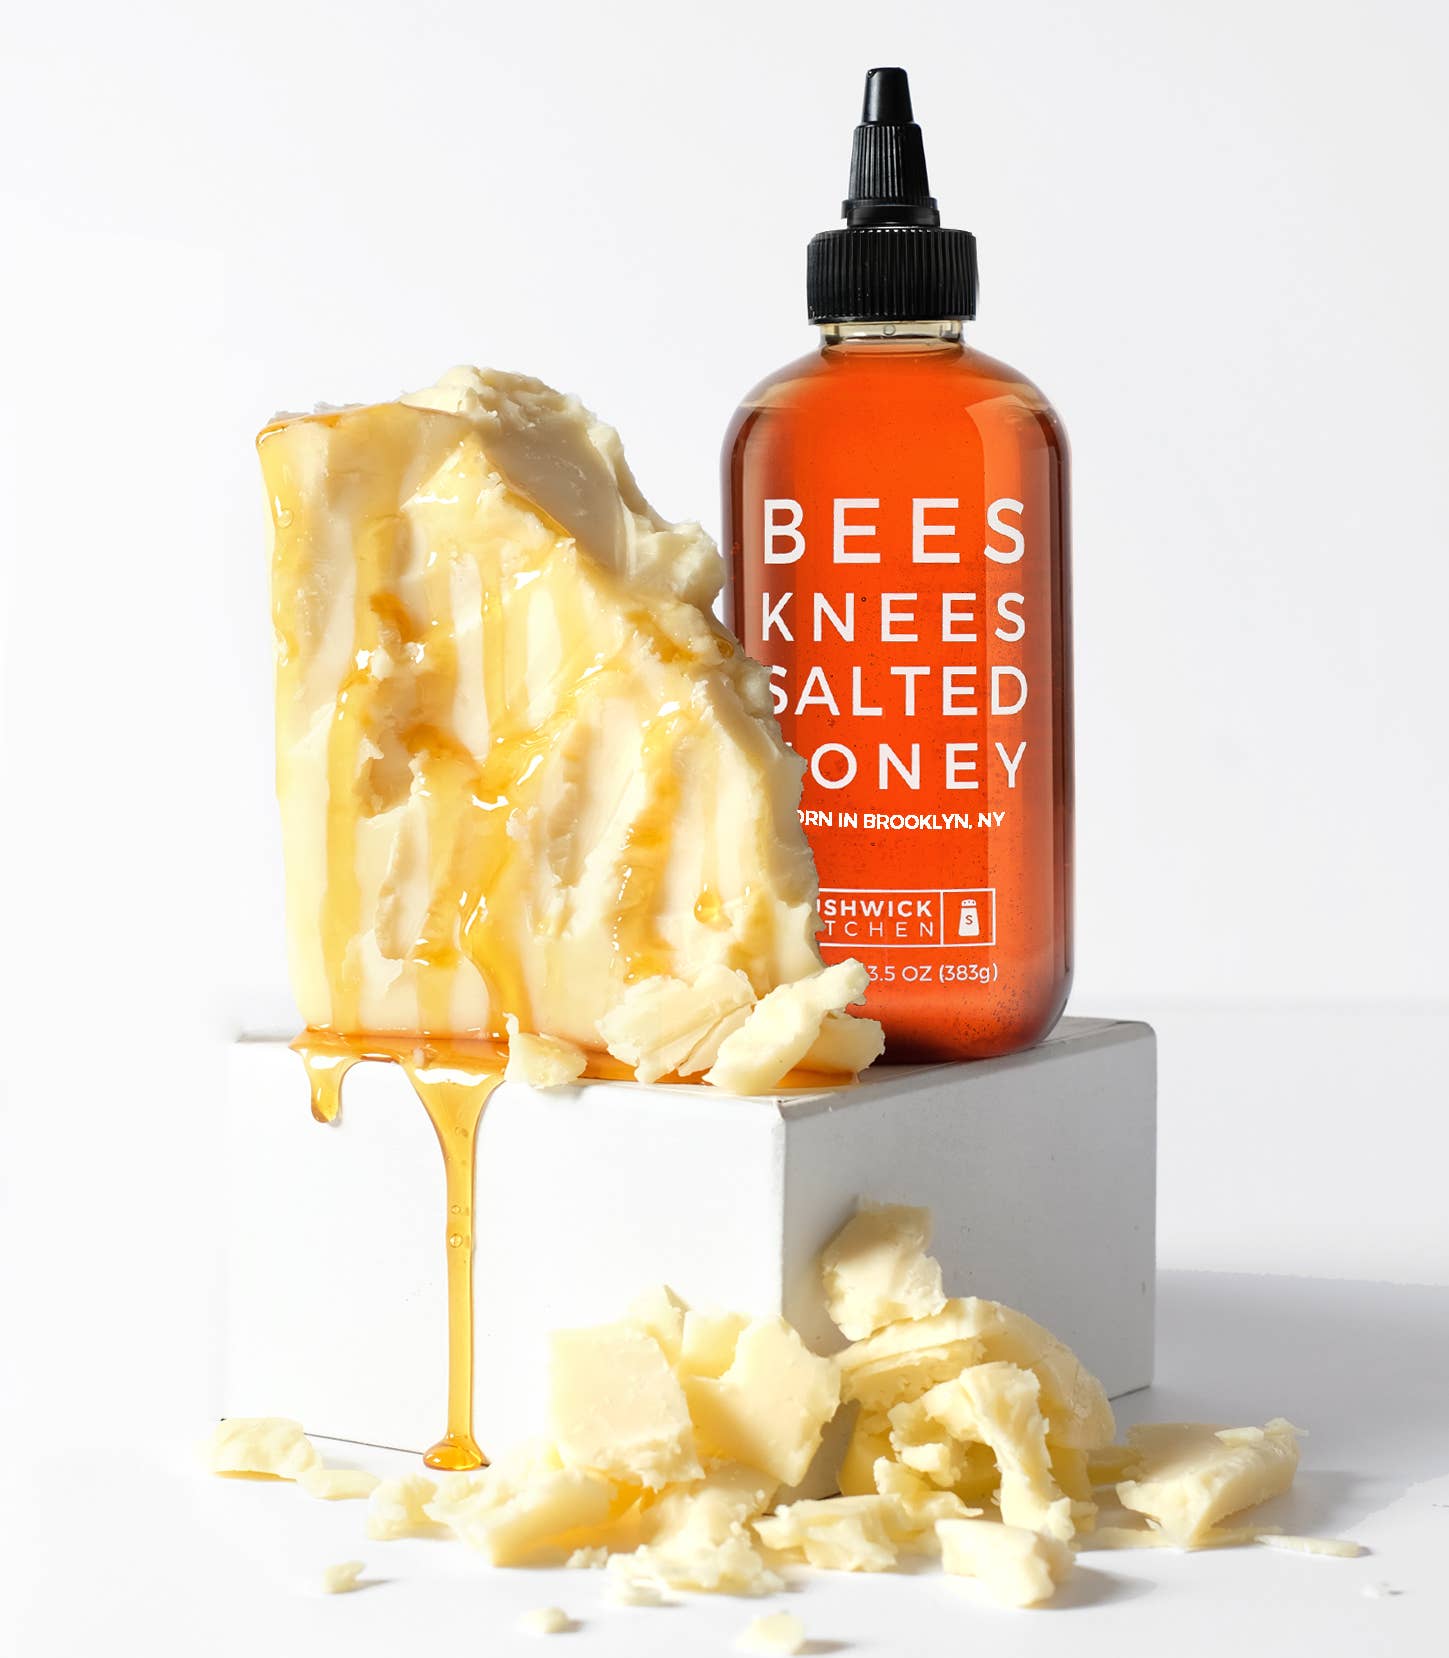 Bees Knees Salted Honey (Vegetarian)